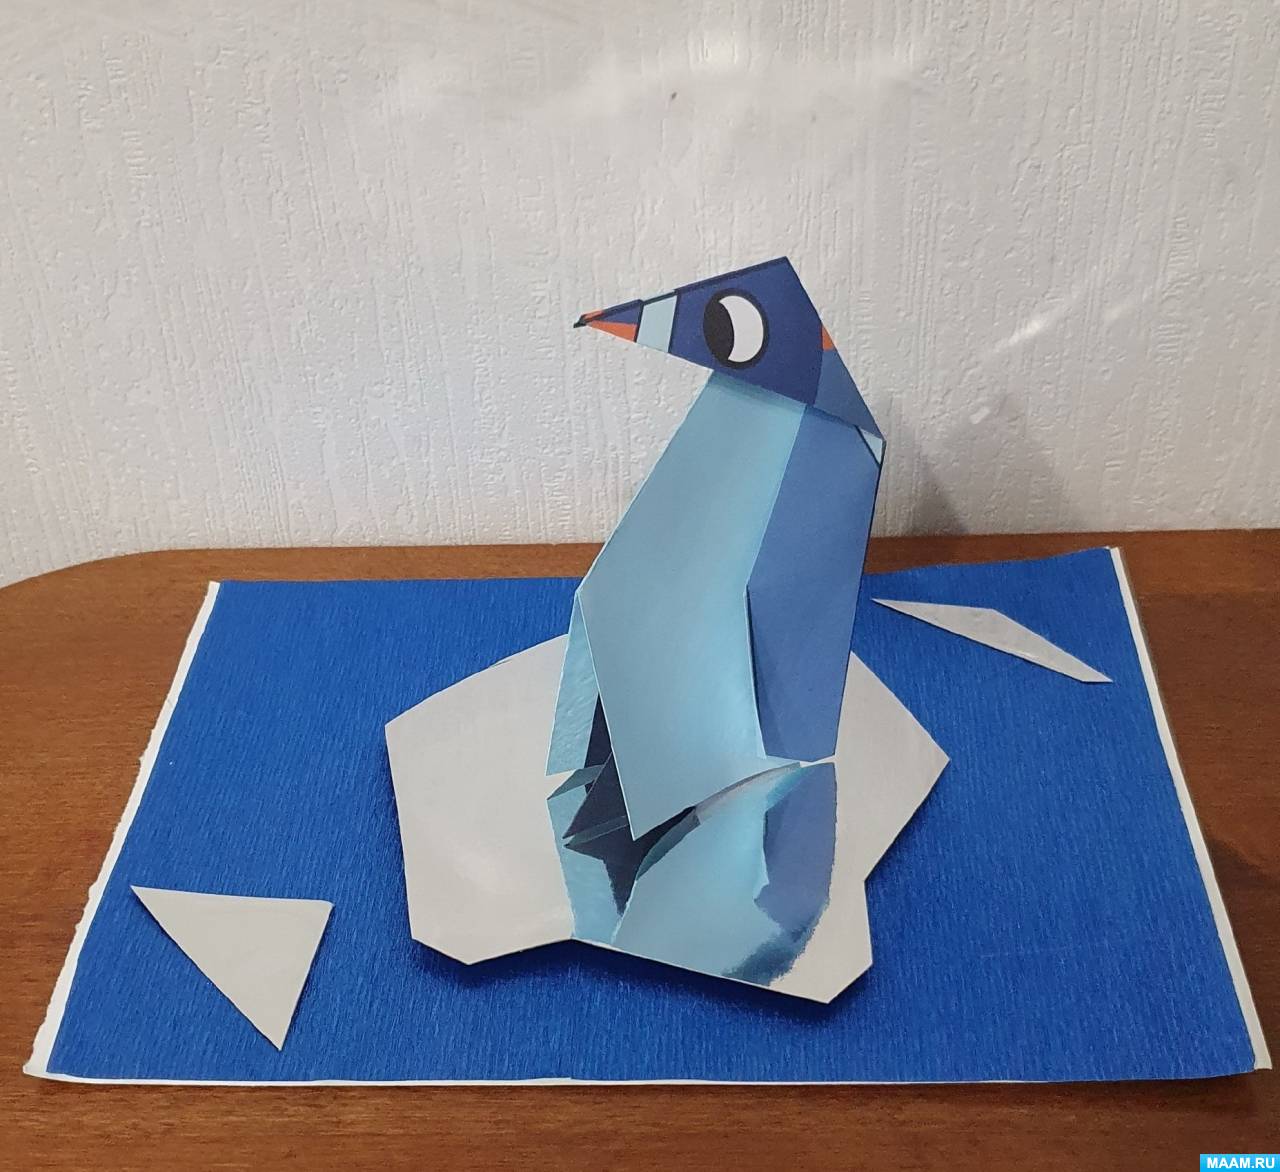 Оригами чайка (37 фото) » идеи в изображениях смотреть онлайн и скачать бесплатно